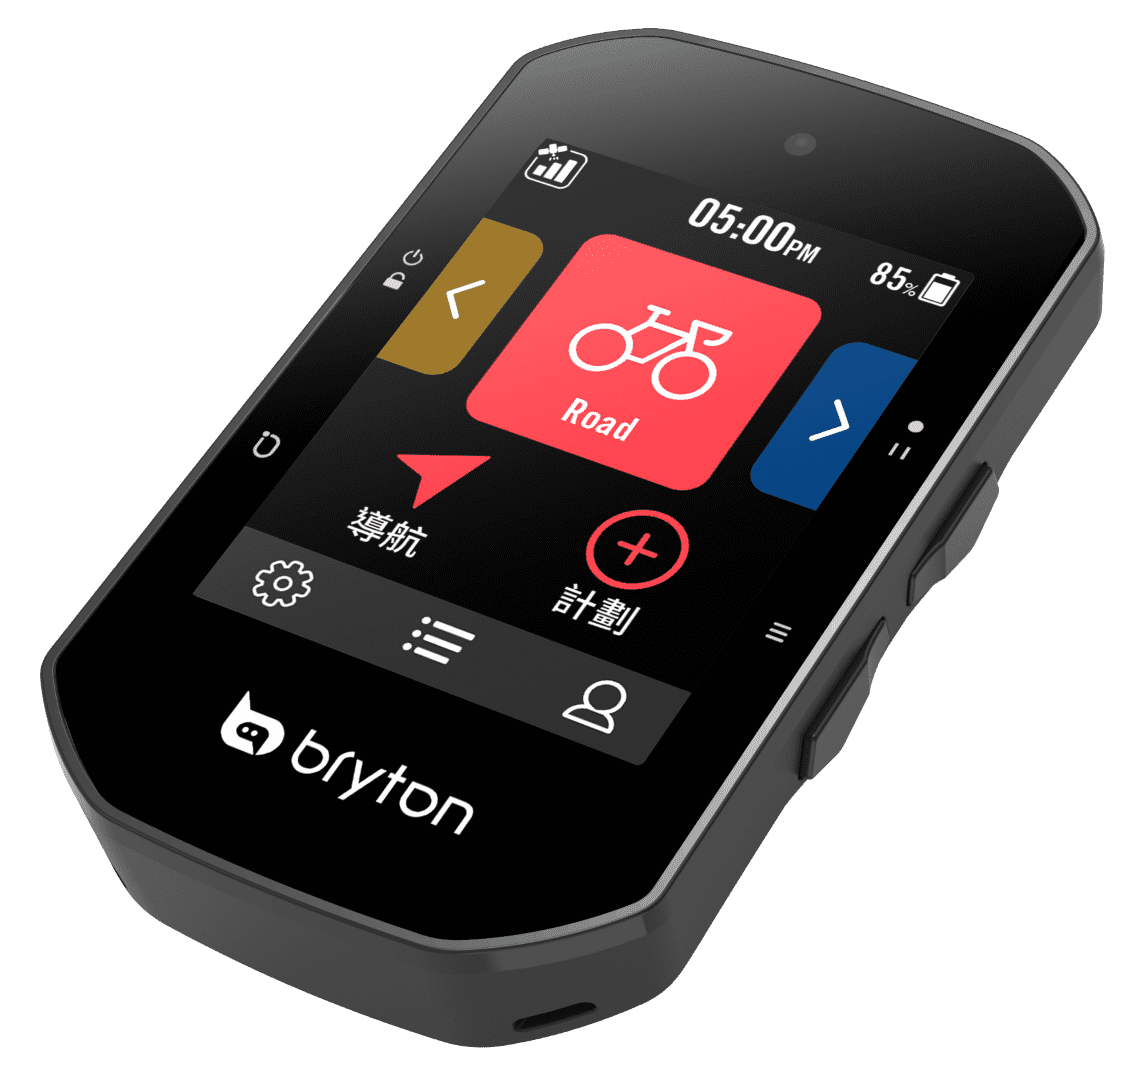 חדשות: חברת Bryton משיקה את מכשיר הדגל החדש שלה ה Rider S500